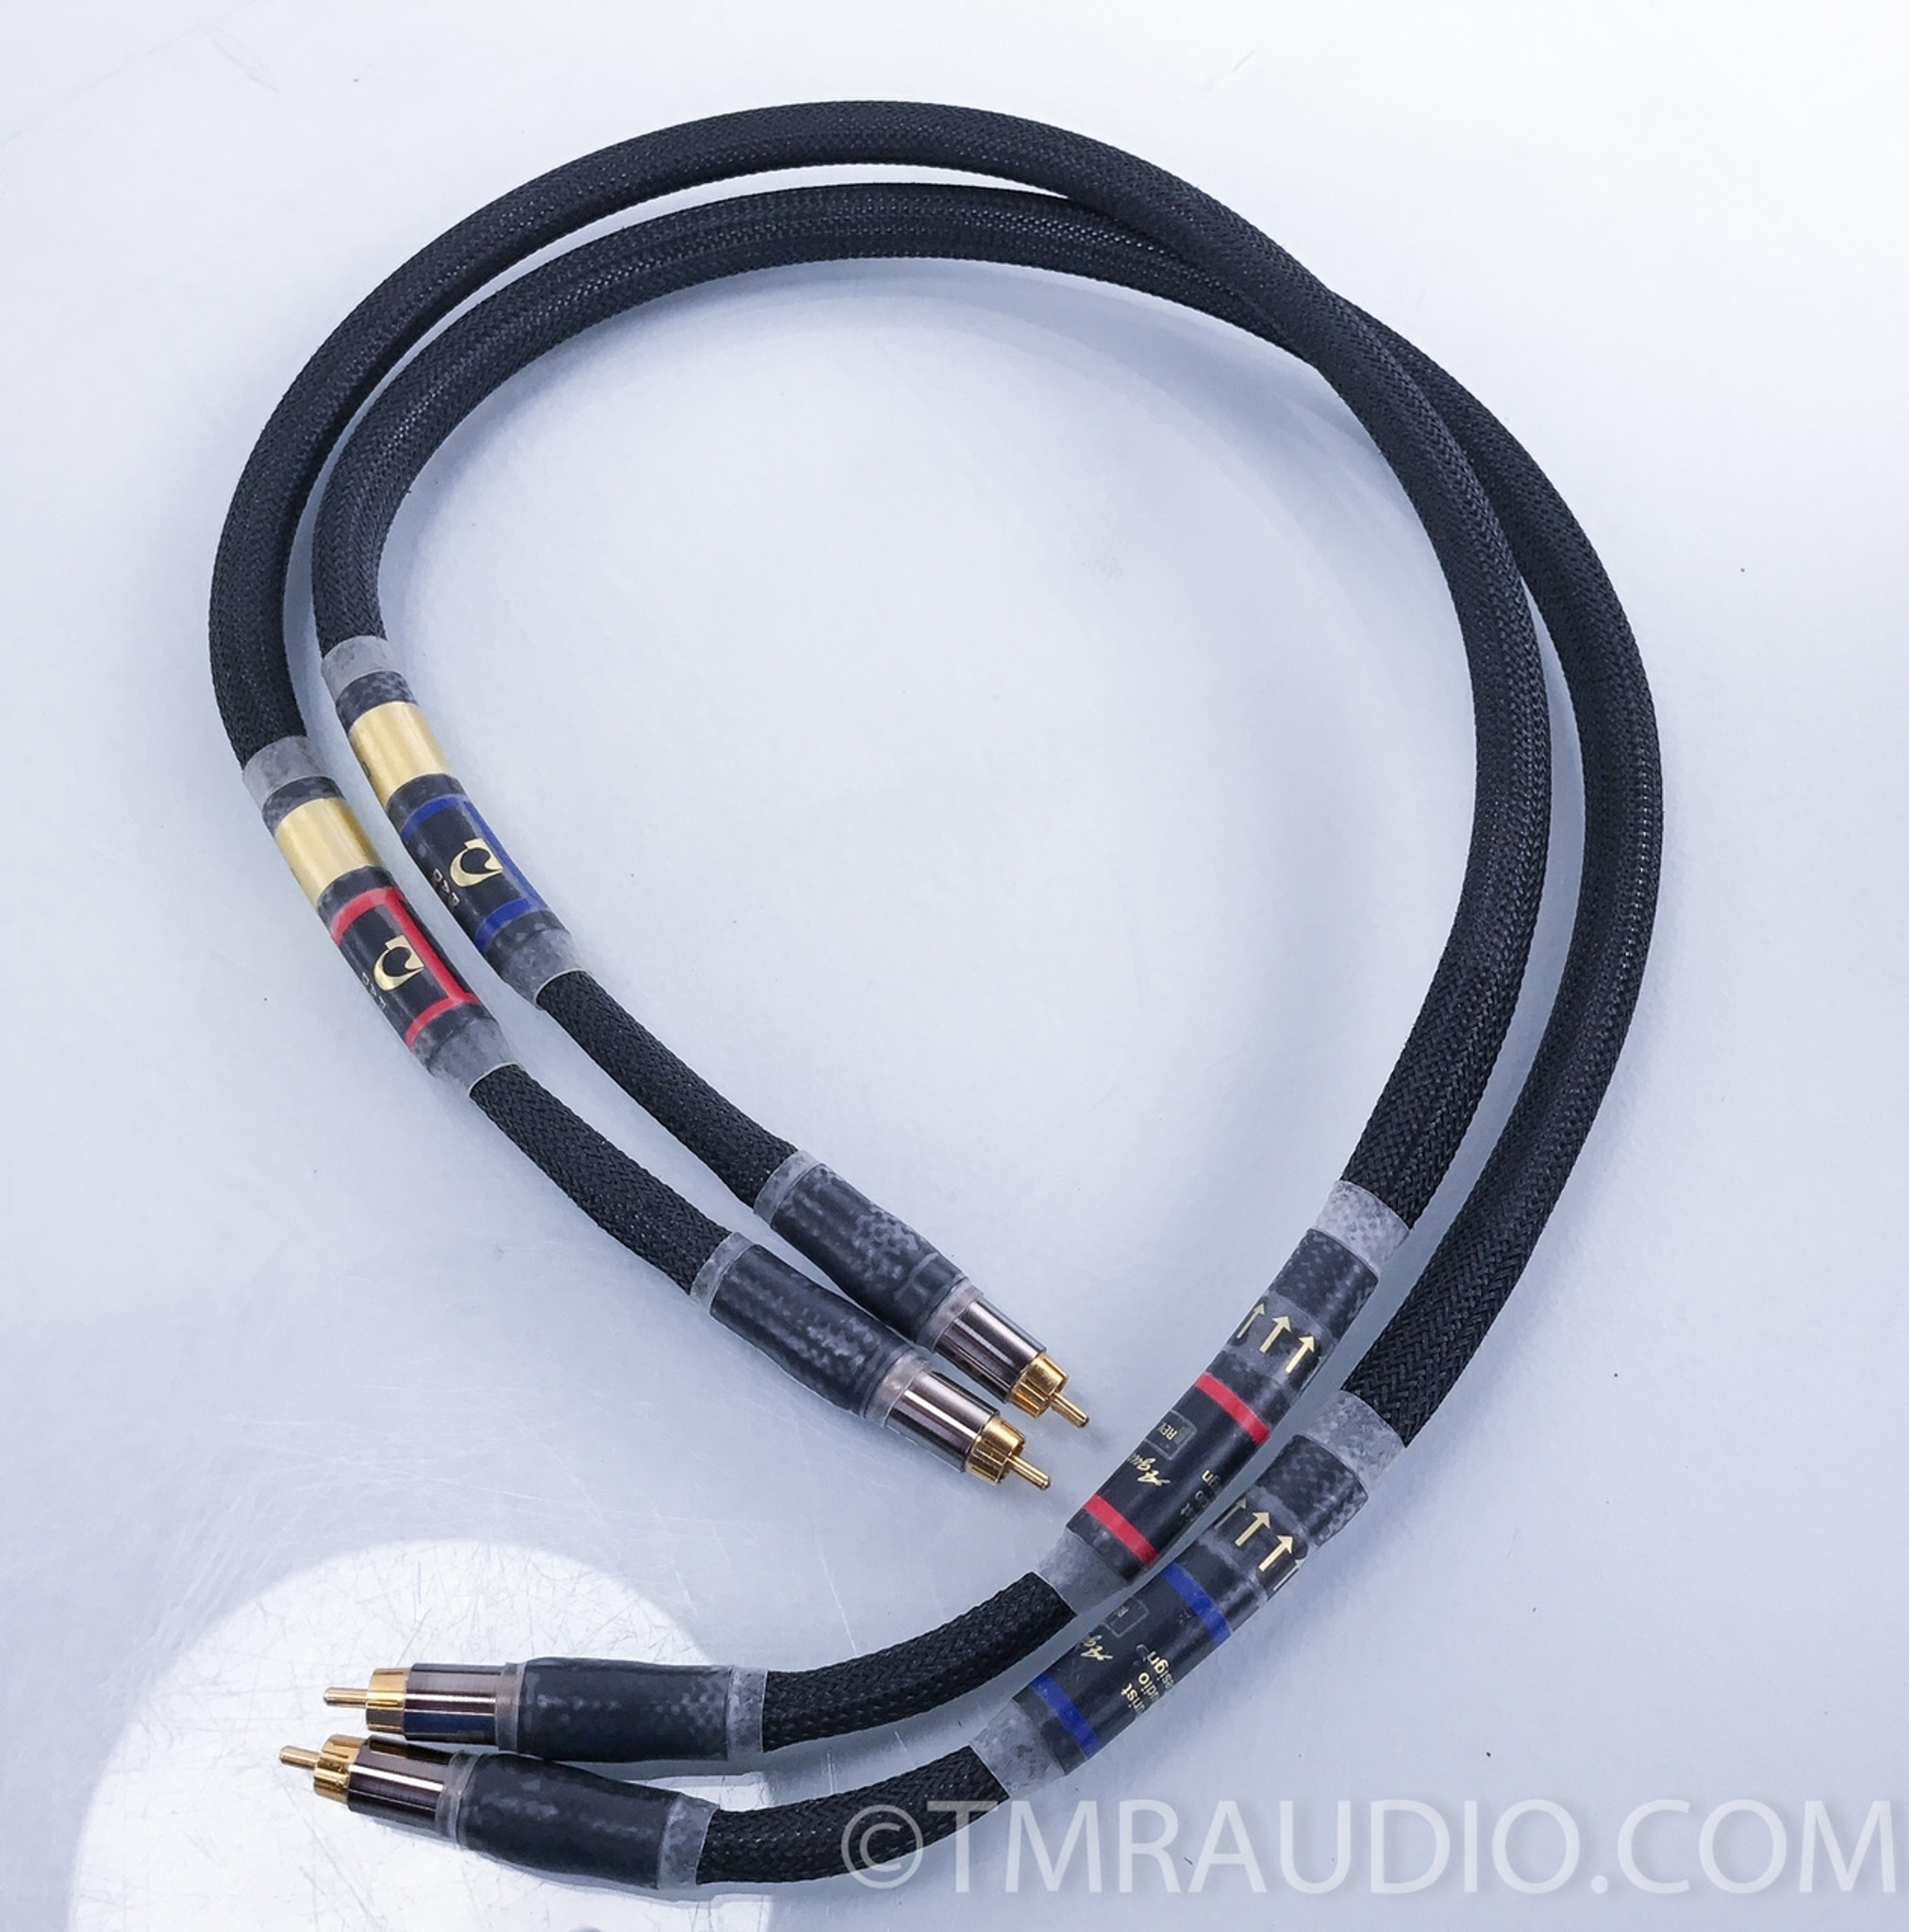 Purist Audio Design Aqueous Rev. B RCA Cables; 1m Pair Interconnects